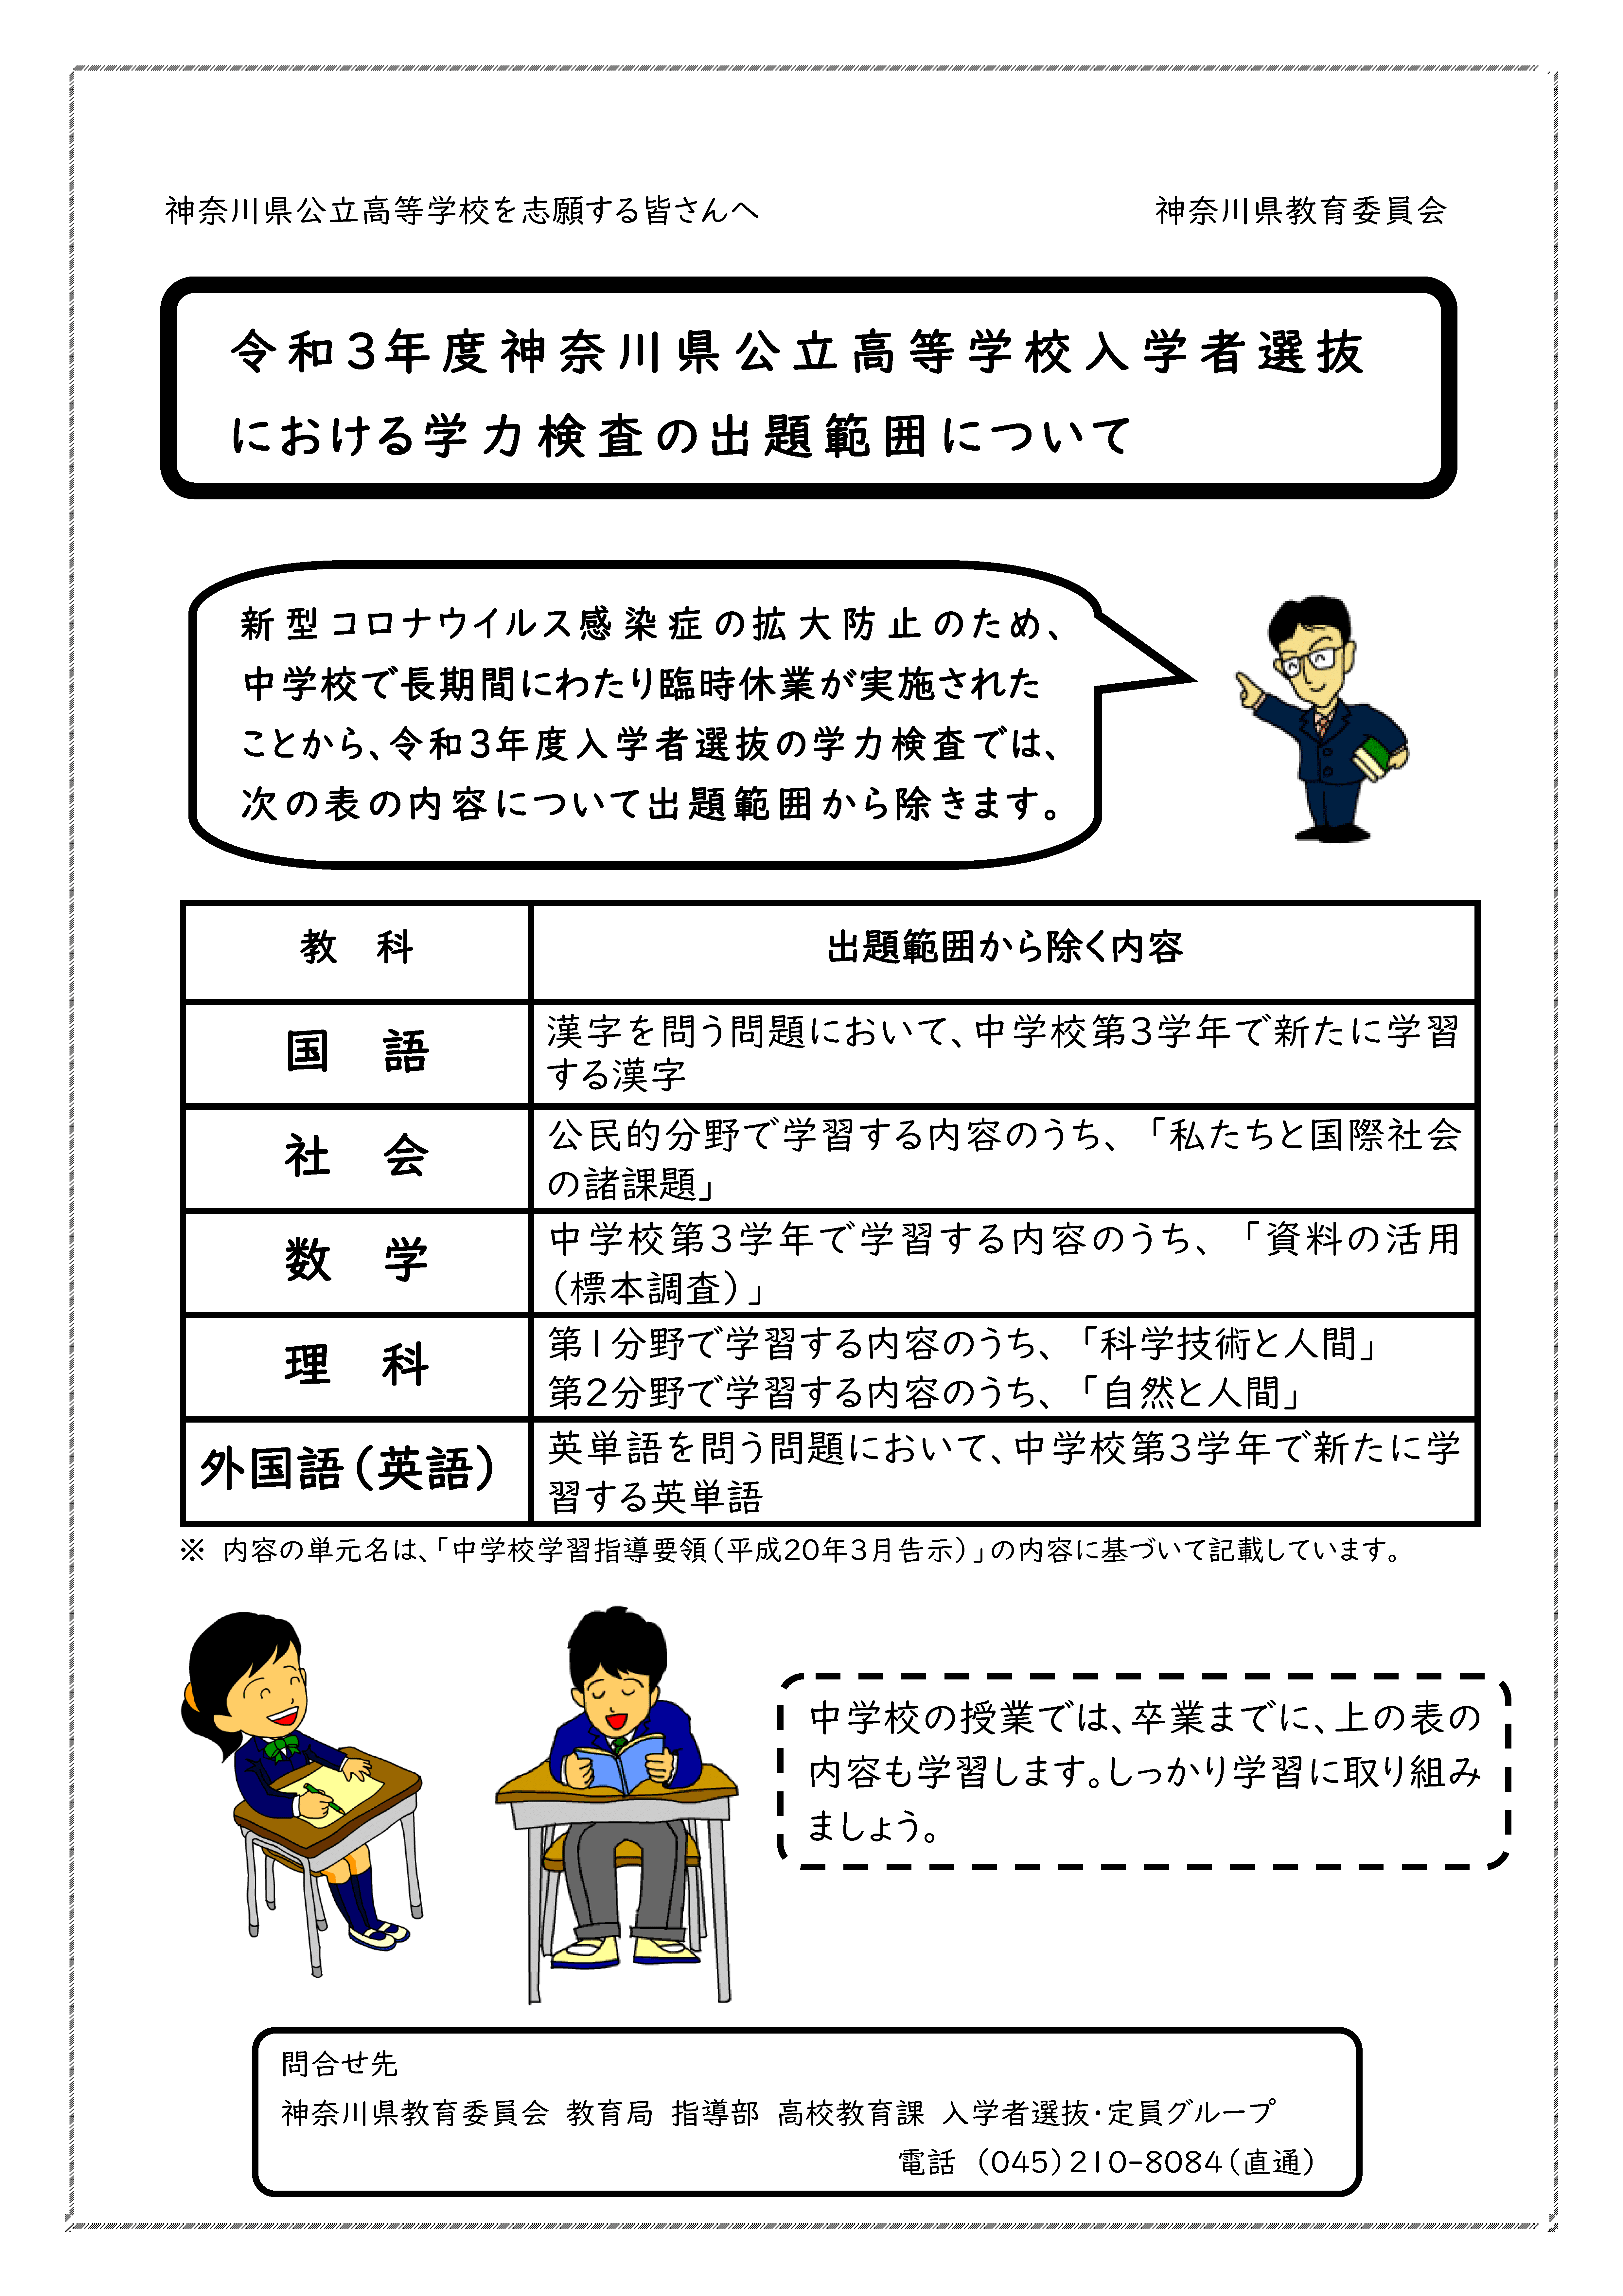 神奈川 県 公立 高校 入試 2021